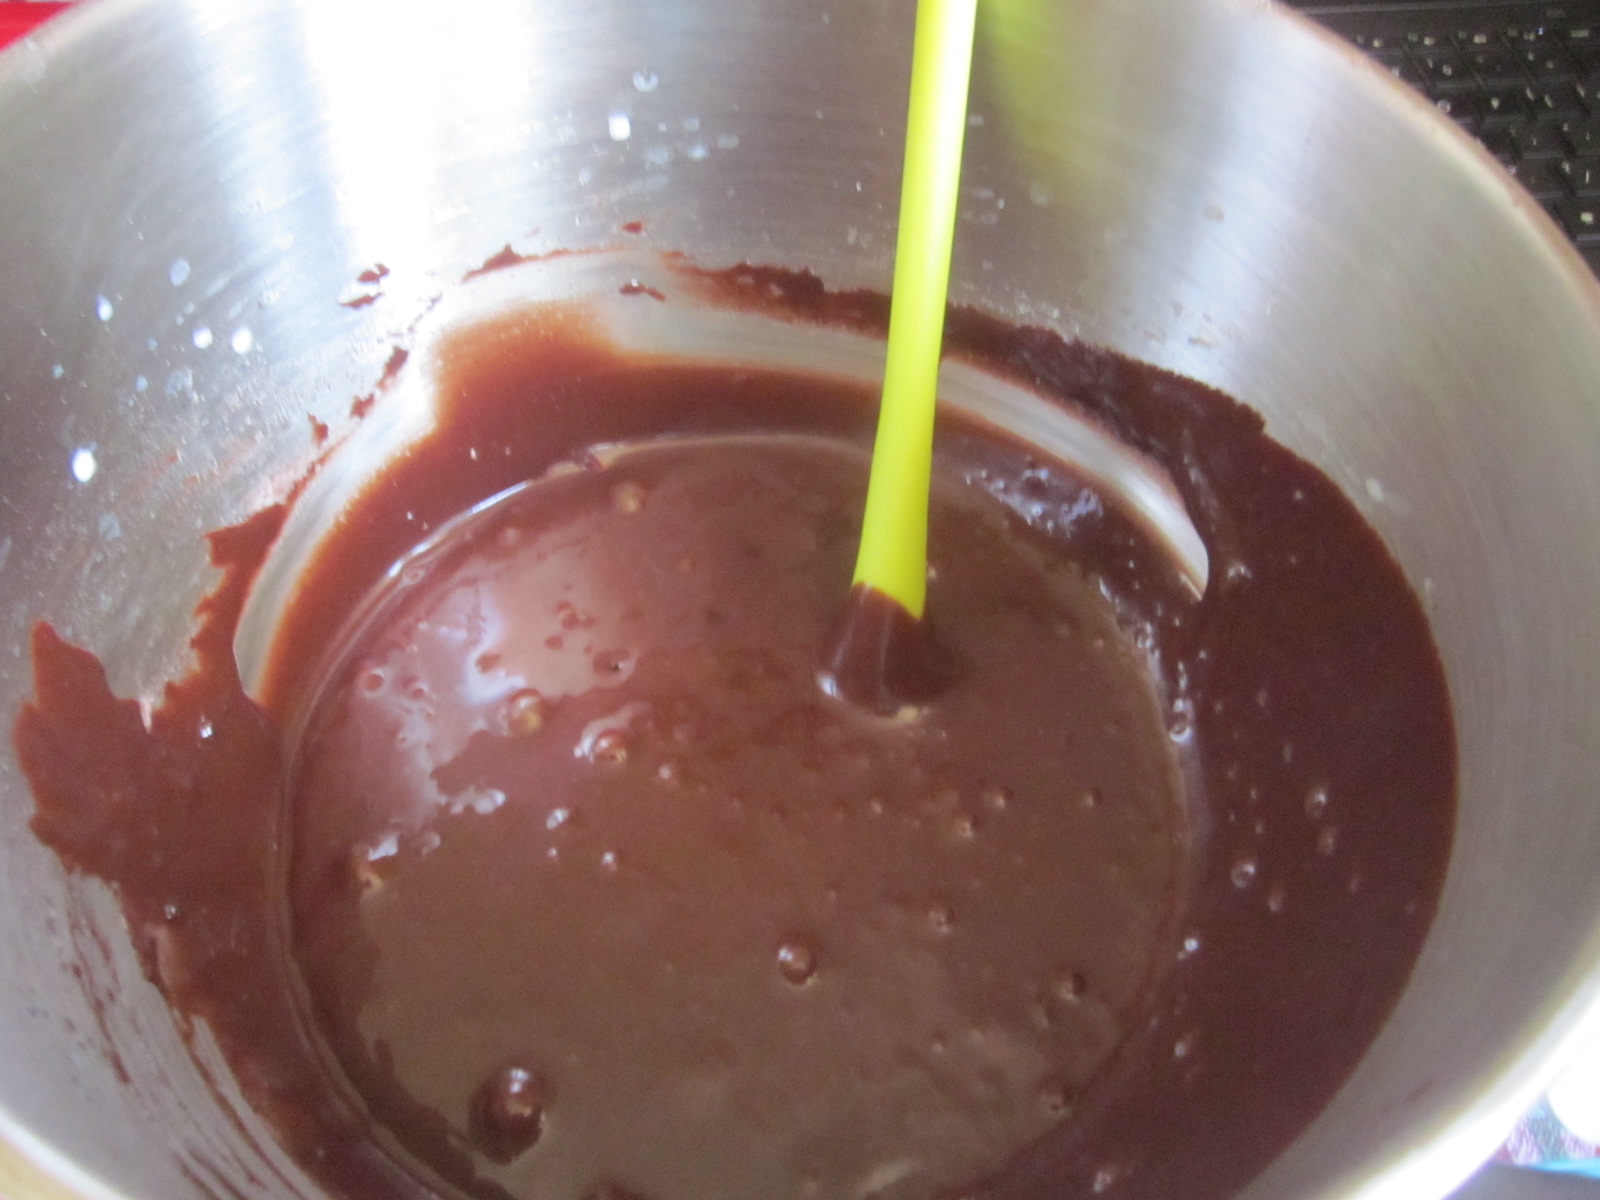 Brioșe cu cacao, glazură de ciocolată și nuci